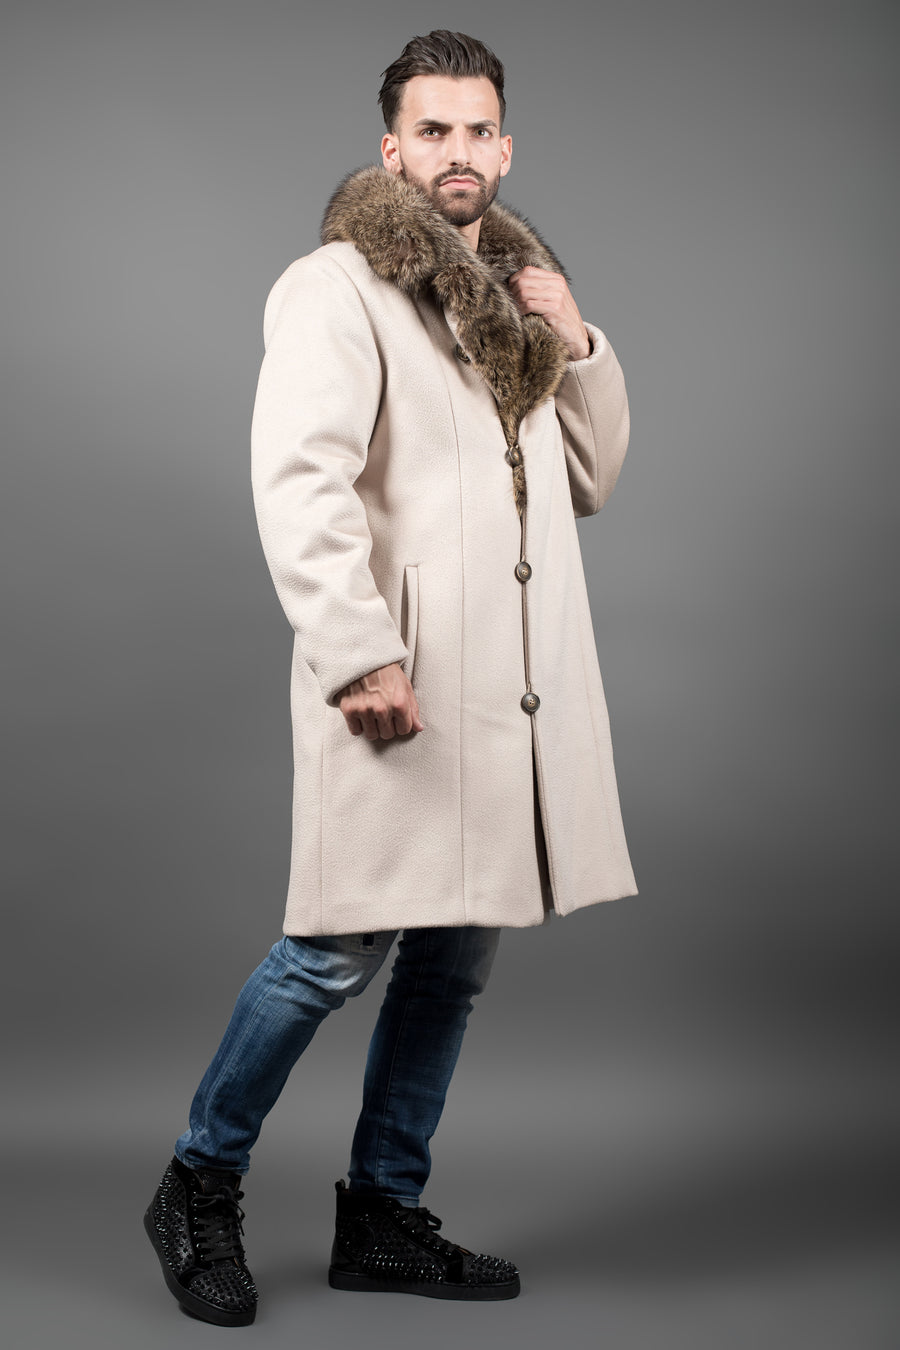 Luxury Racoon fur coat for men